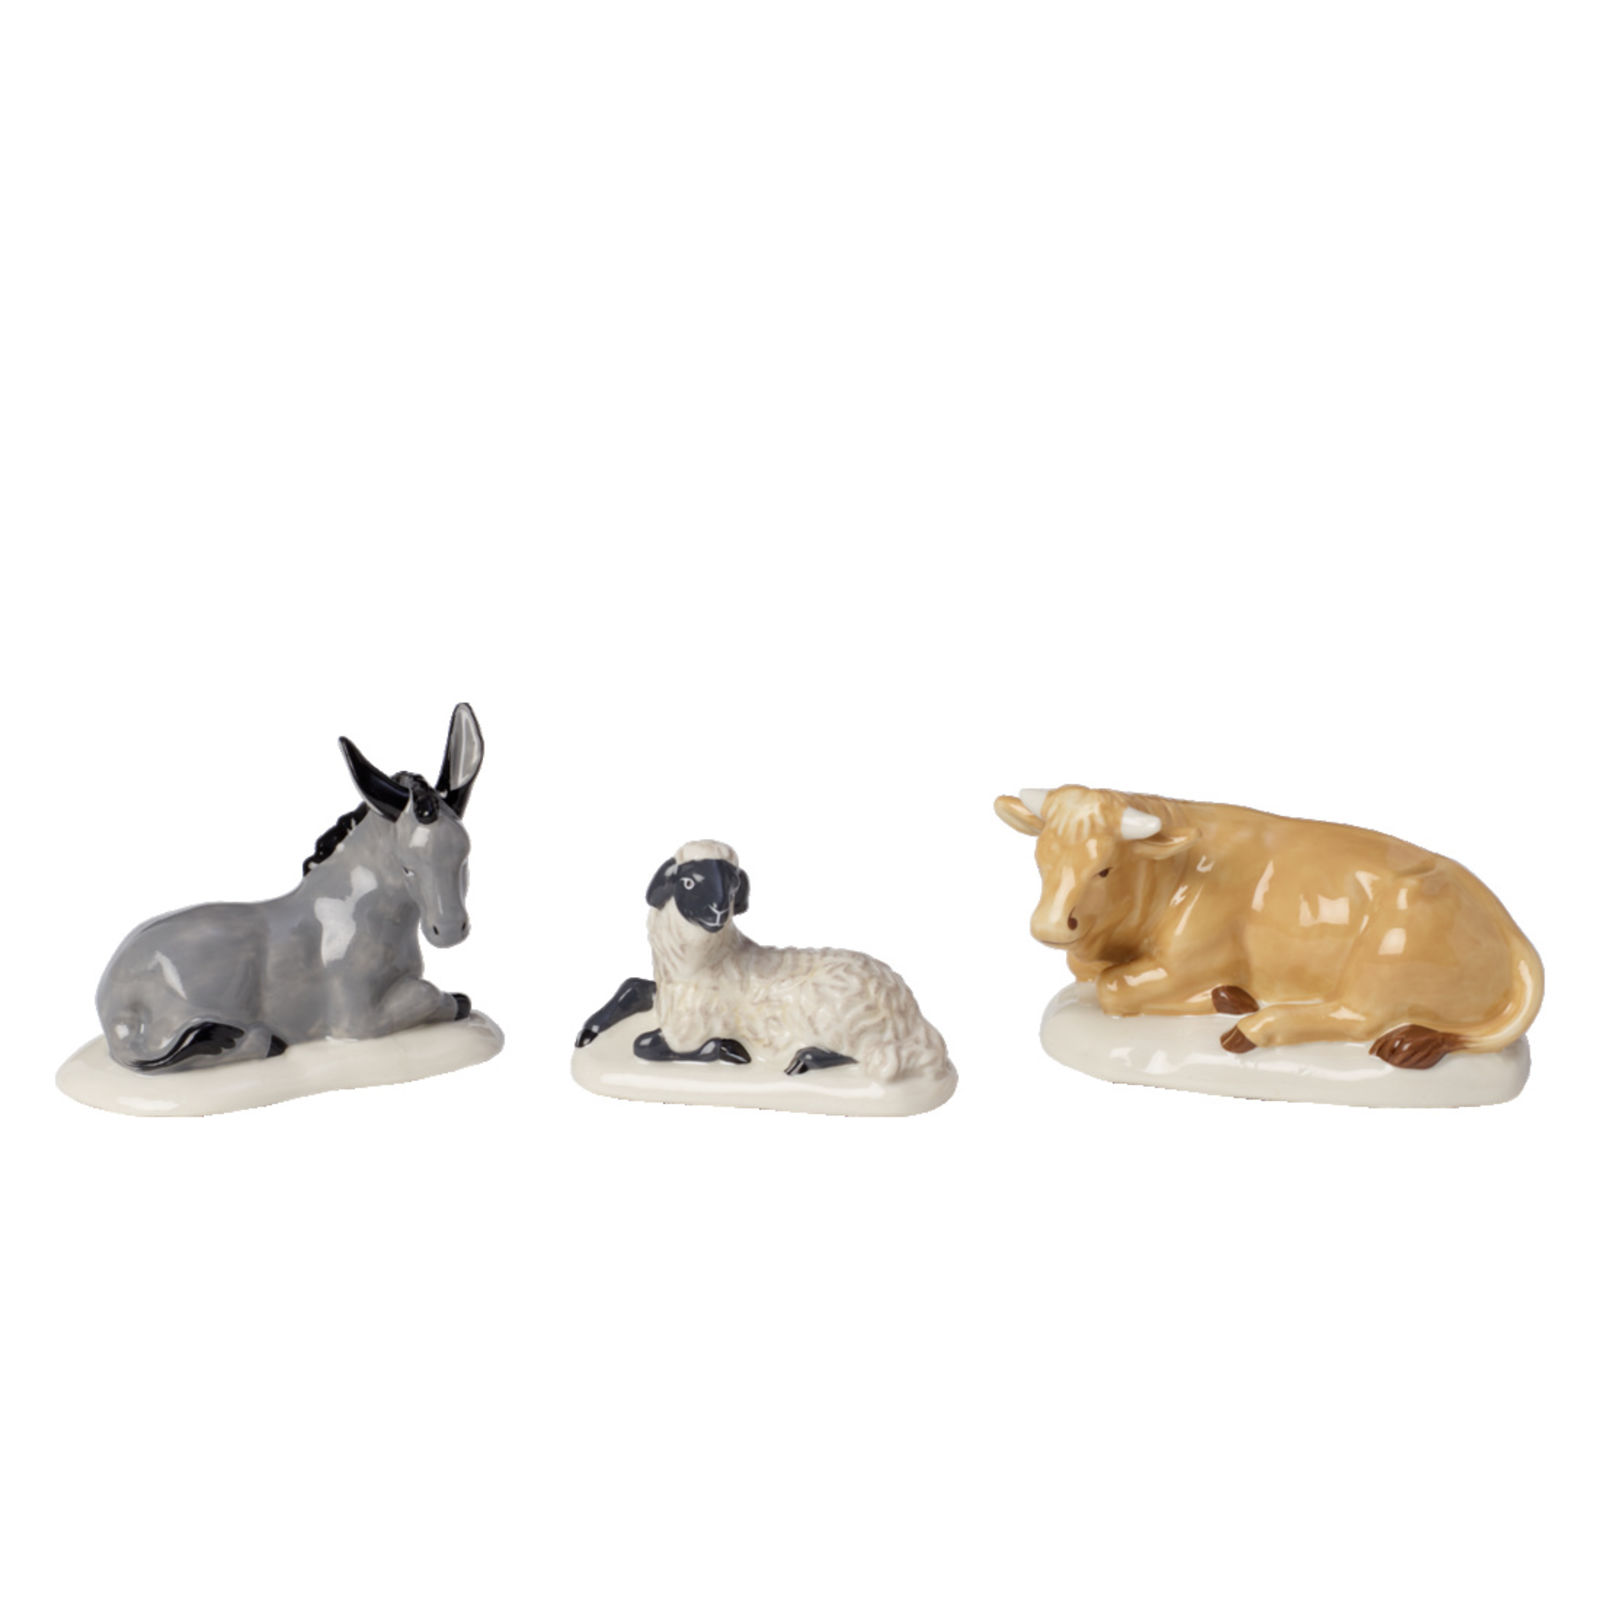 Porcelana Villeroy & Boch Nativity Figura de belén Animales Marrón/Gris Set de 3 Piezas 